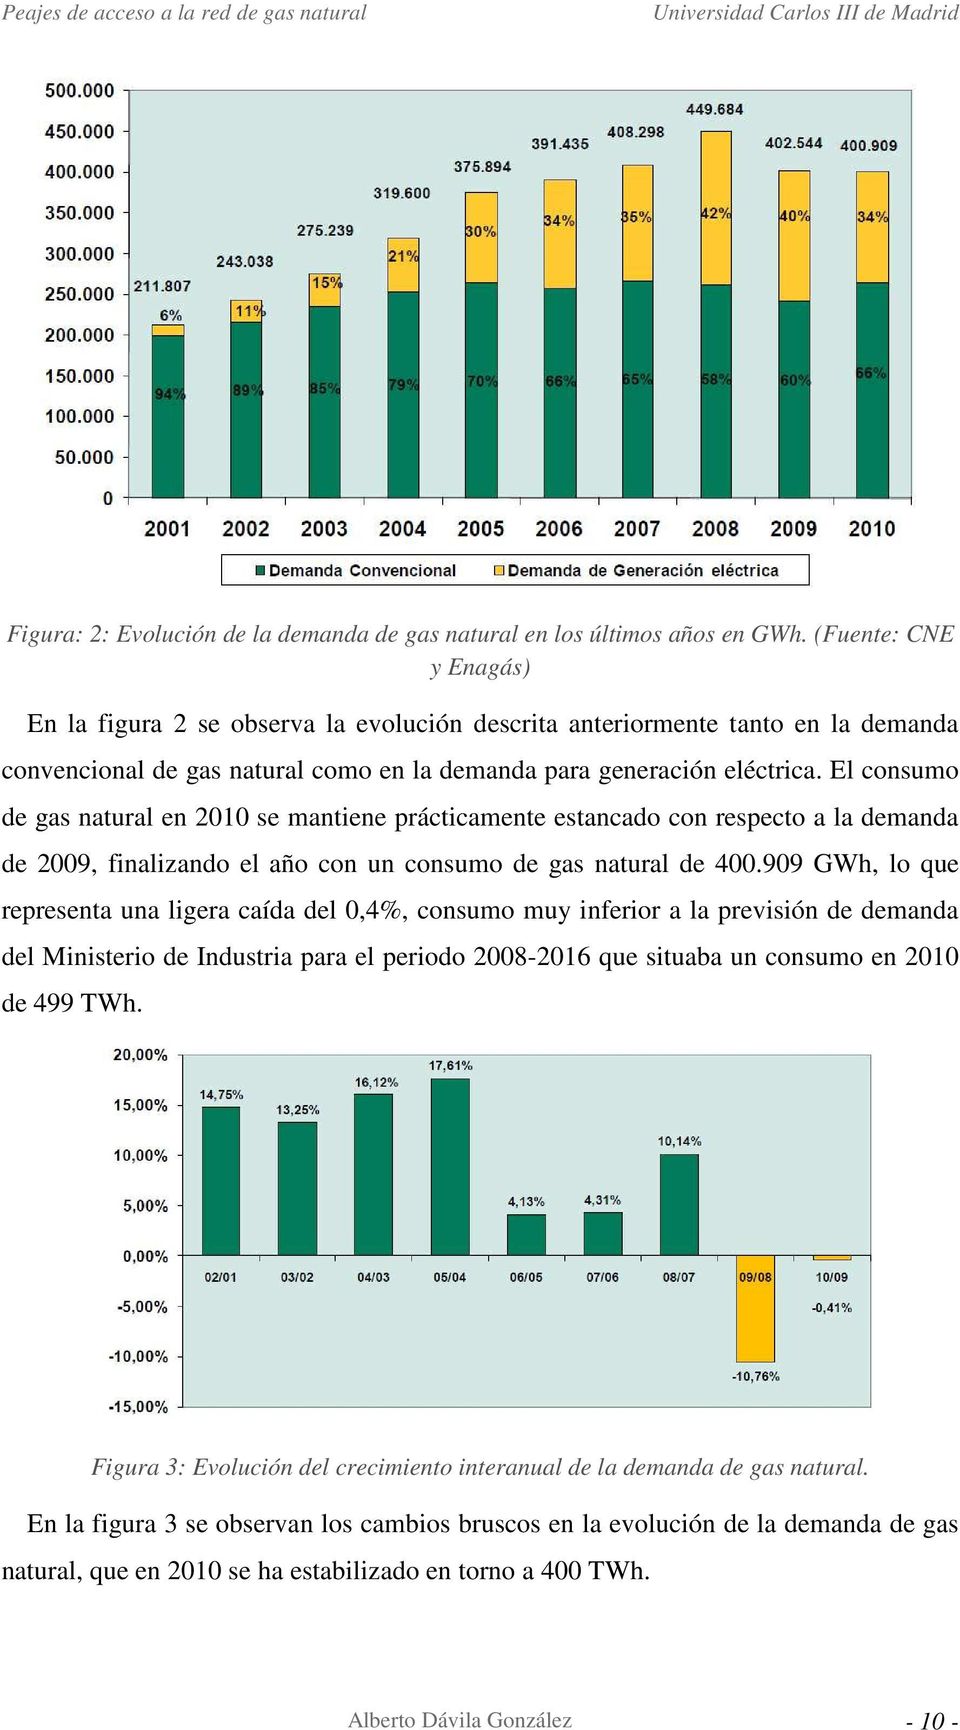 El consumo de gas natural en 2010 se mantiene prácticamente estancado con respecto a la demanda de 2009, finalizando el año con un consumo de gas natural de 400.